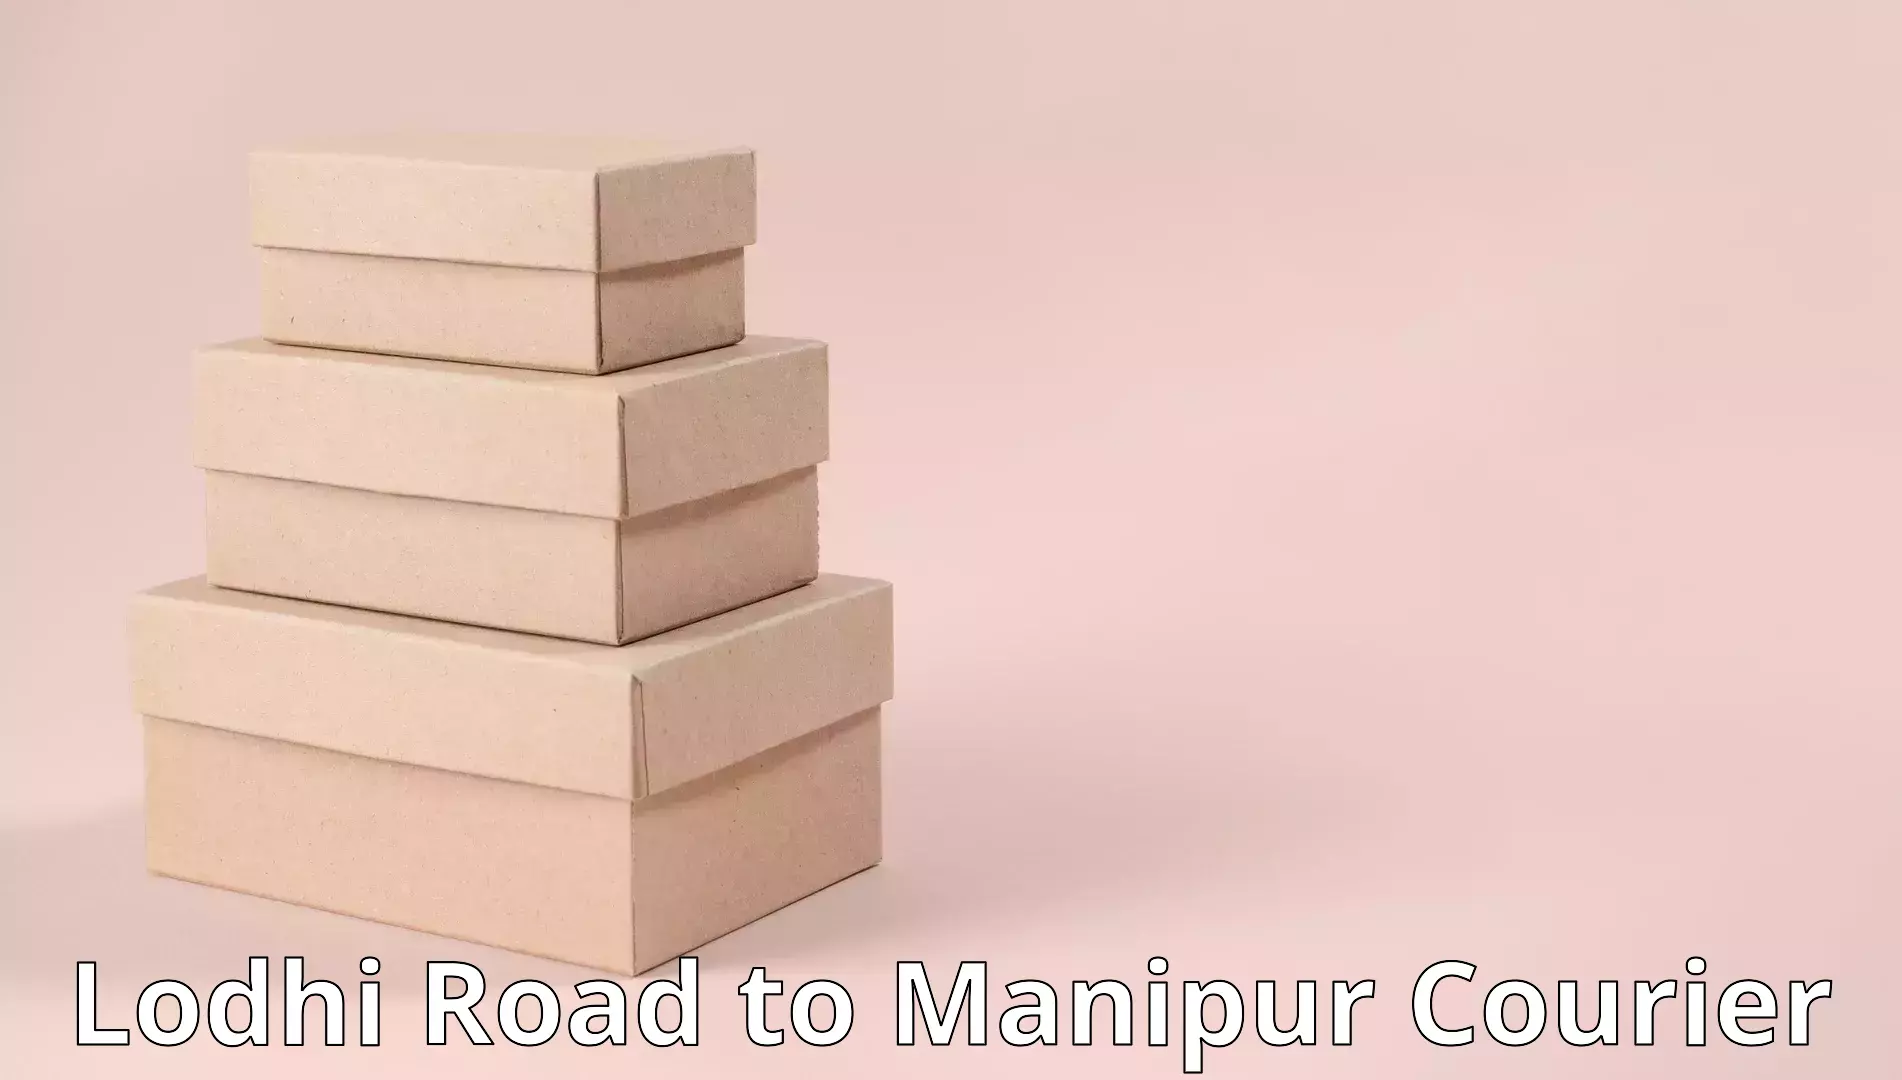 Efficient furniture transport Lodhi Road to Kanti